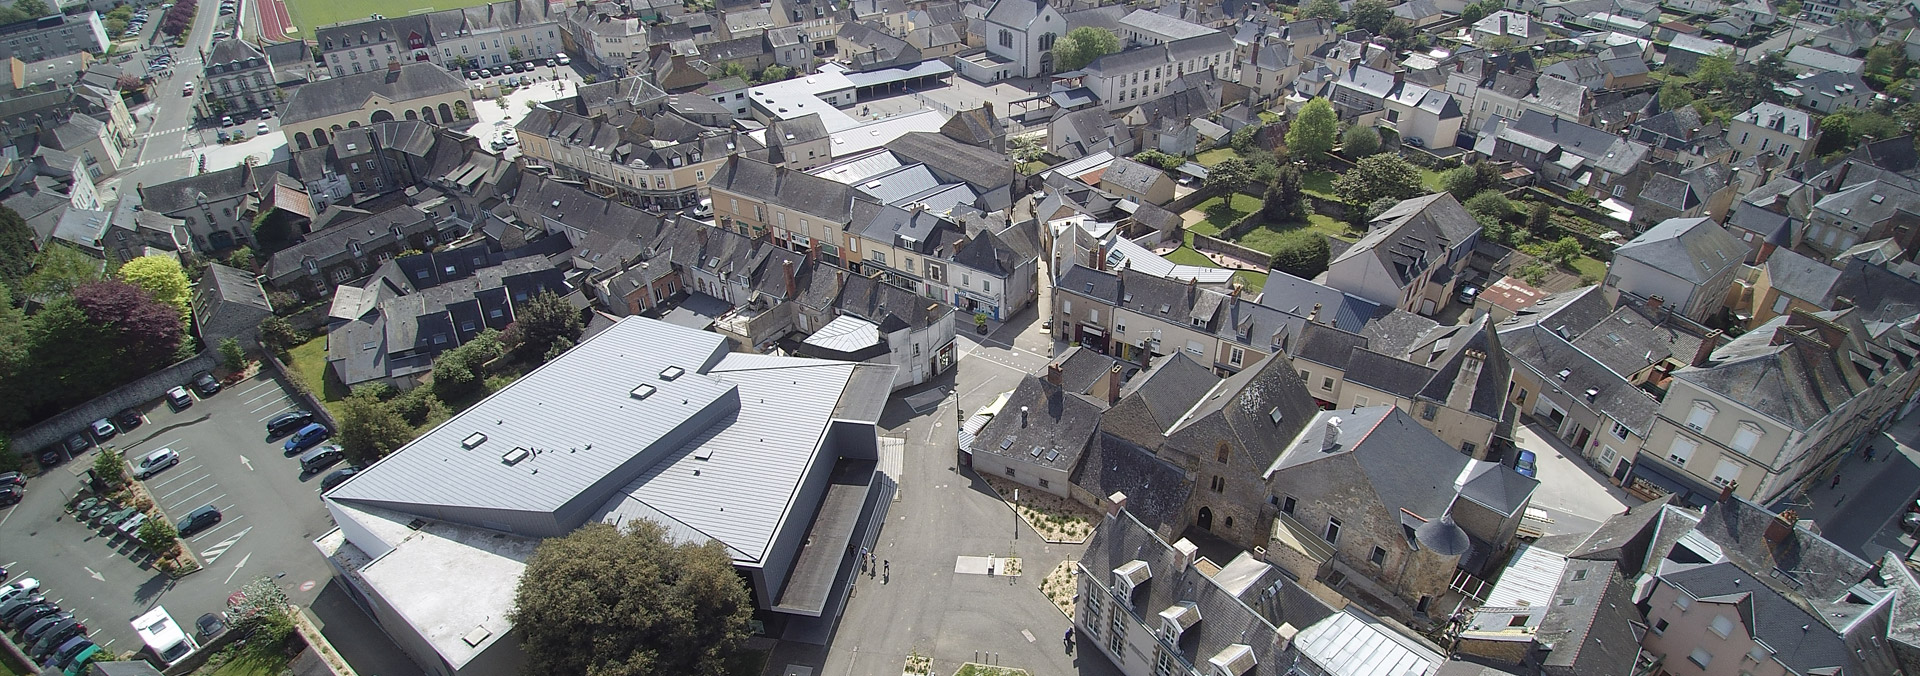 Evron centre ville commune nouvelle Mayenne